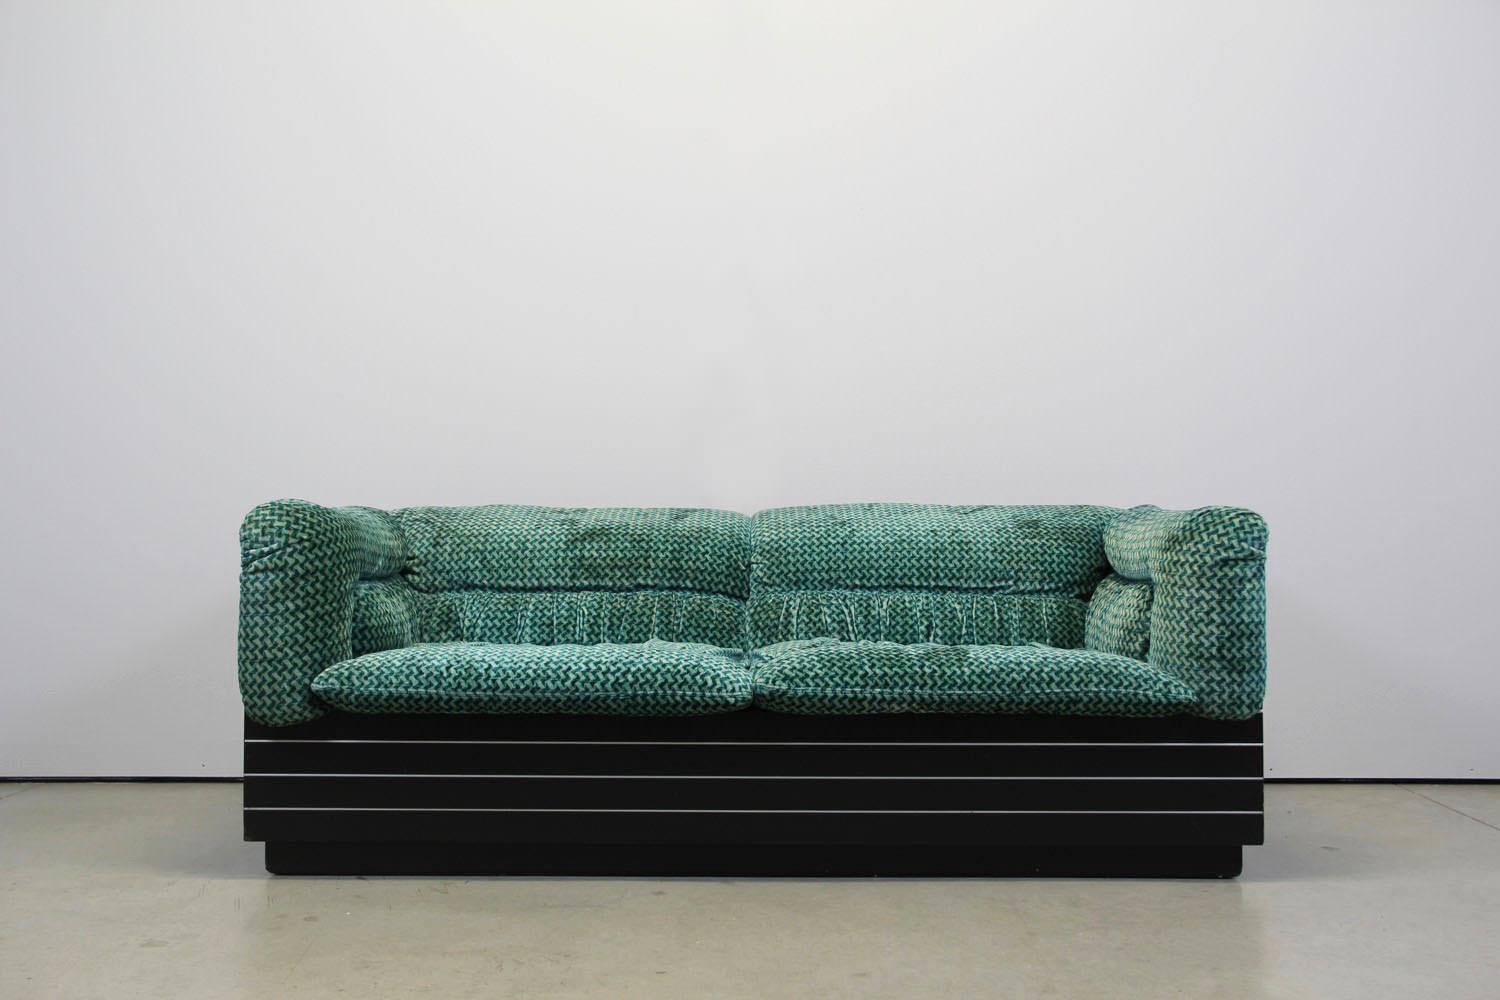 Dieses Wohnzimmerset wurde in den 1970er Jahren von Saporiti Italia hergestellt.
Der Entwurf stammt von Giovanni Offredi.
Sie besteht aus  3-Sitzer-Sofa und ein 2-Sitzer-Sofa mit 1 Couchtisch.
Der Stoff hat eine smaragdgrüne Farbe.
Das schwarze